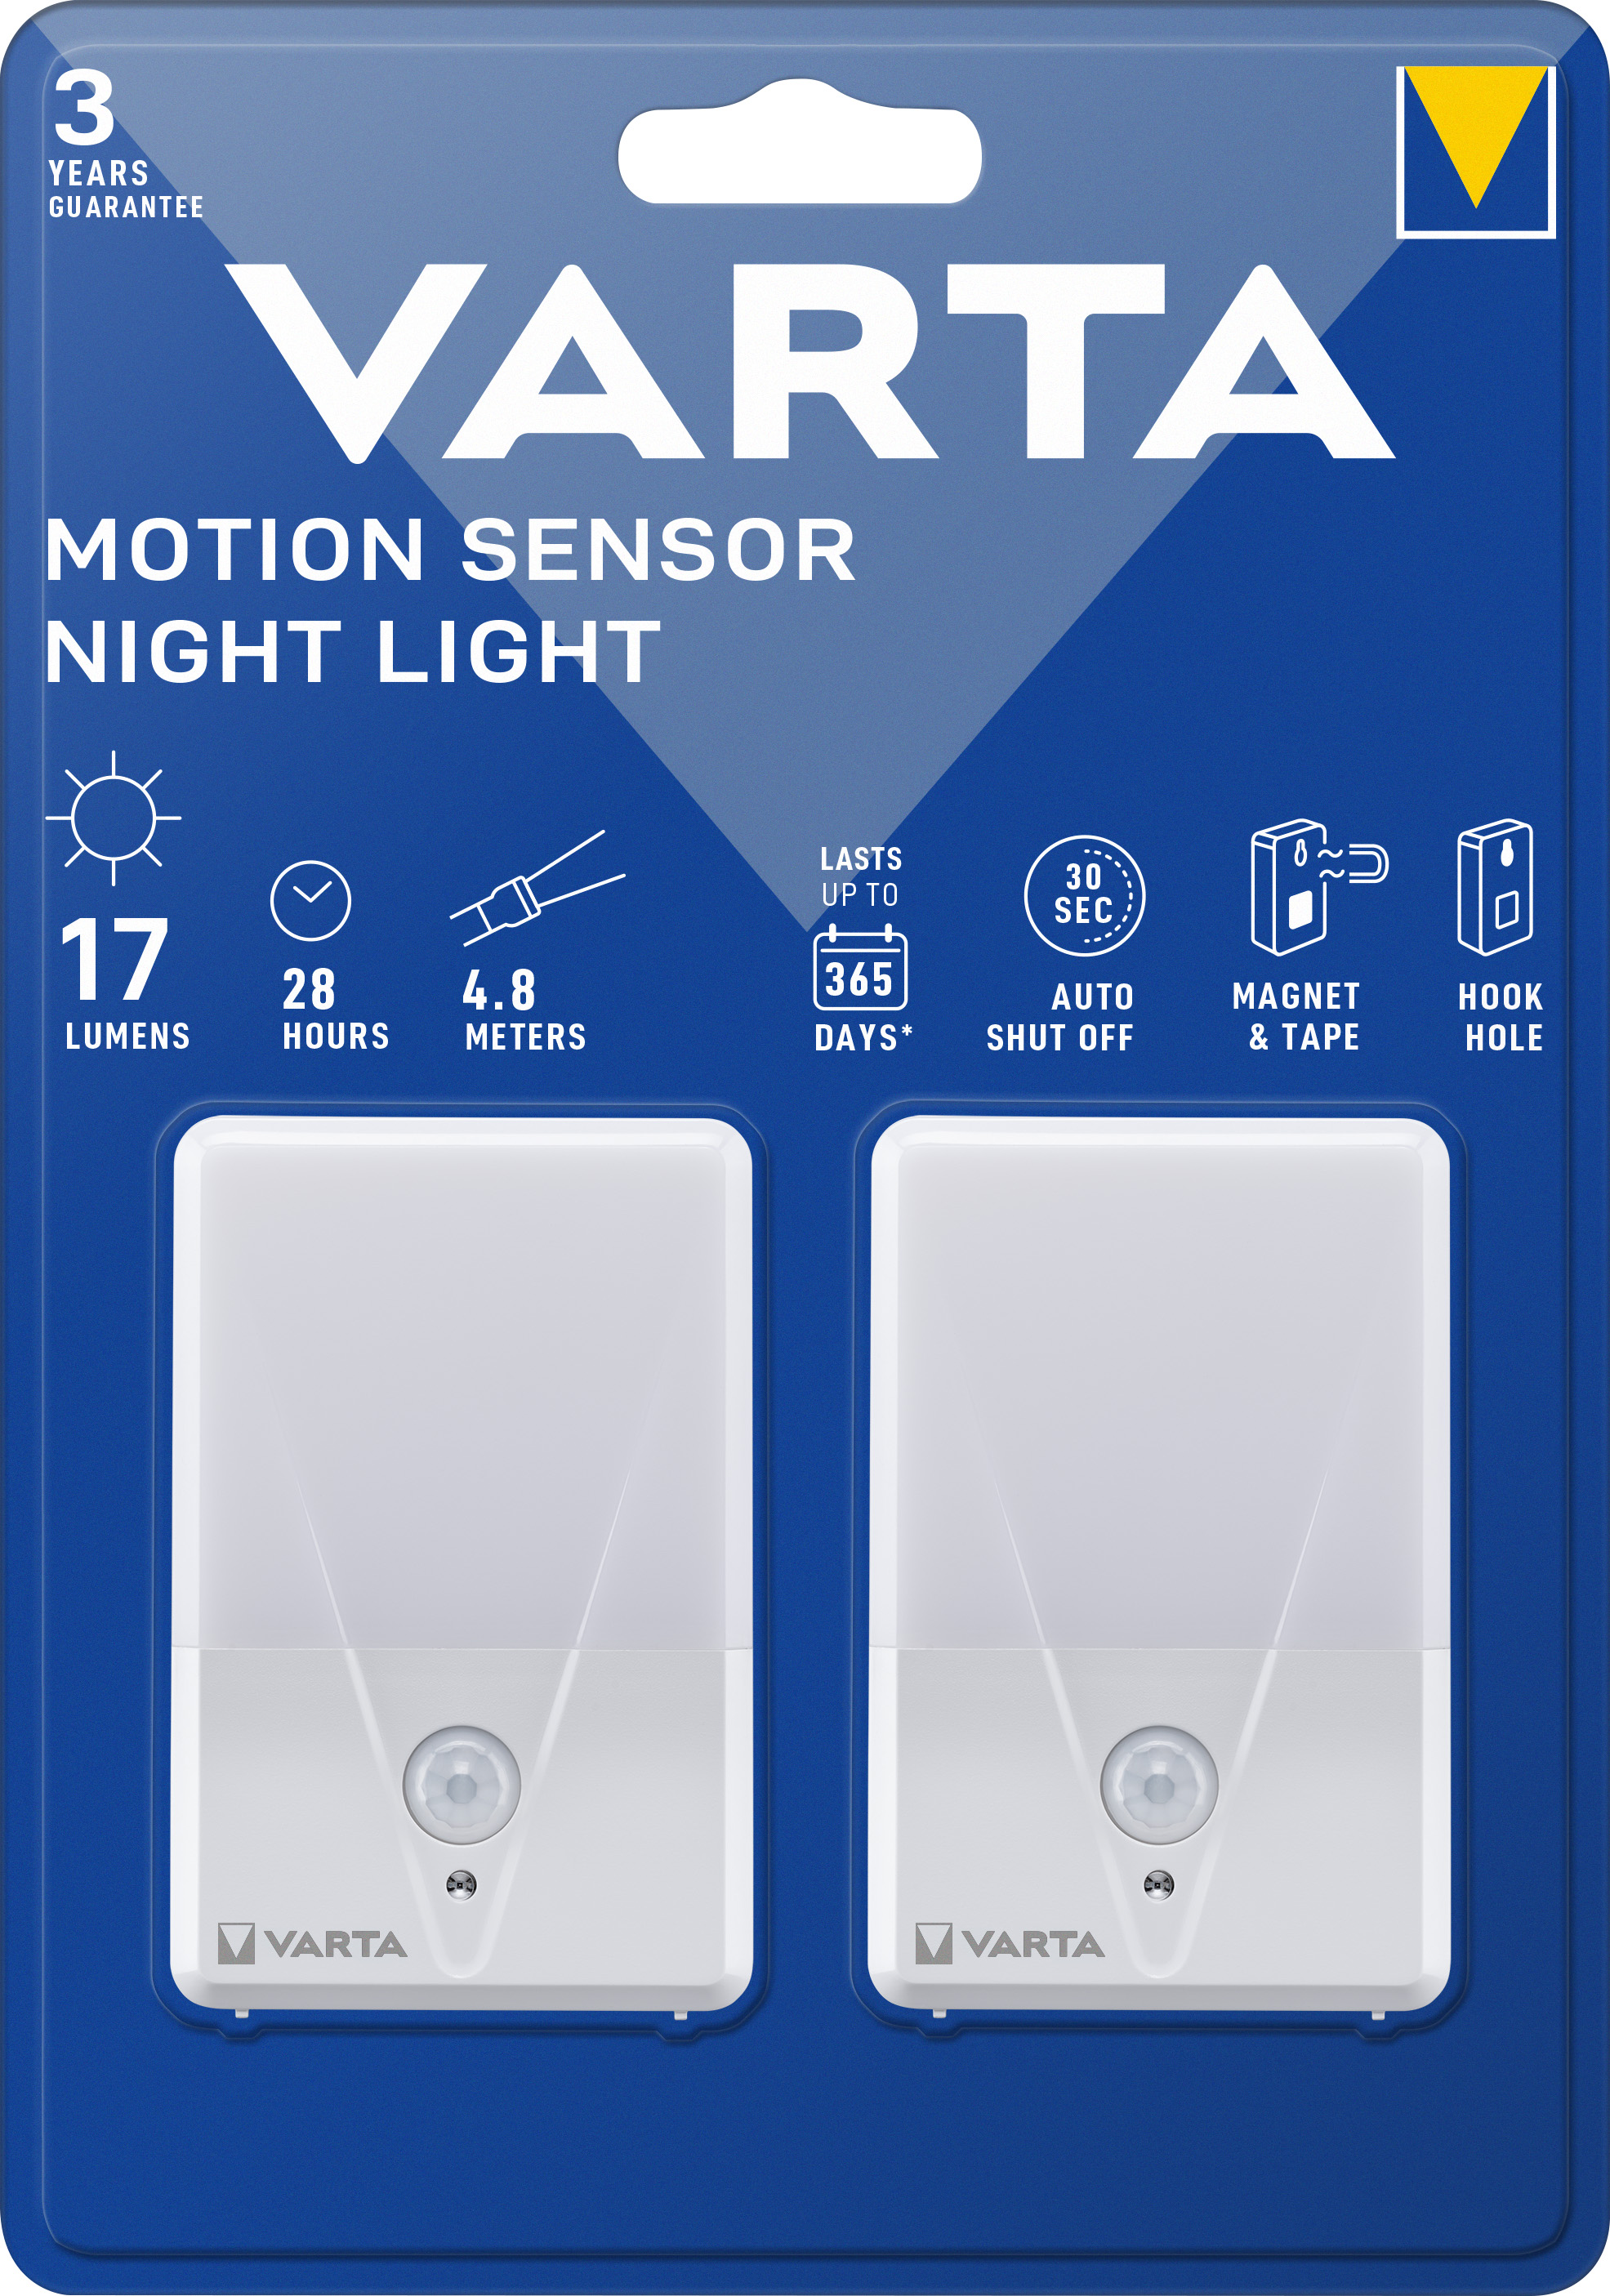 Varta LED Taschenlampe Motion Sensor, Night Light 17lm, Twin Pack, exkl. 3x Batterie Alkaline AAA, Retail Blister